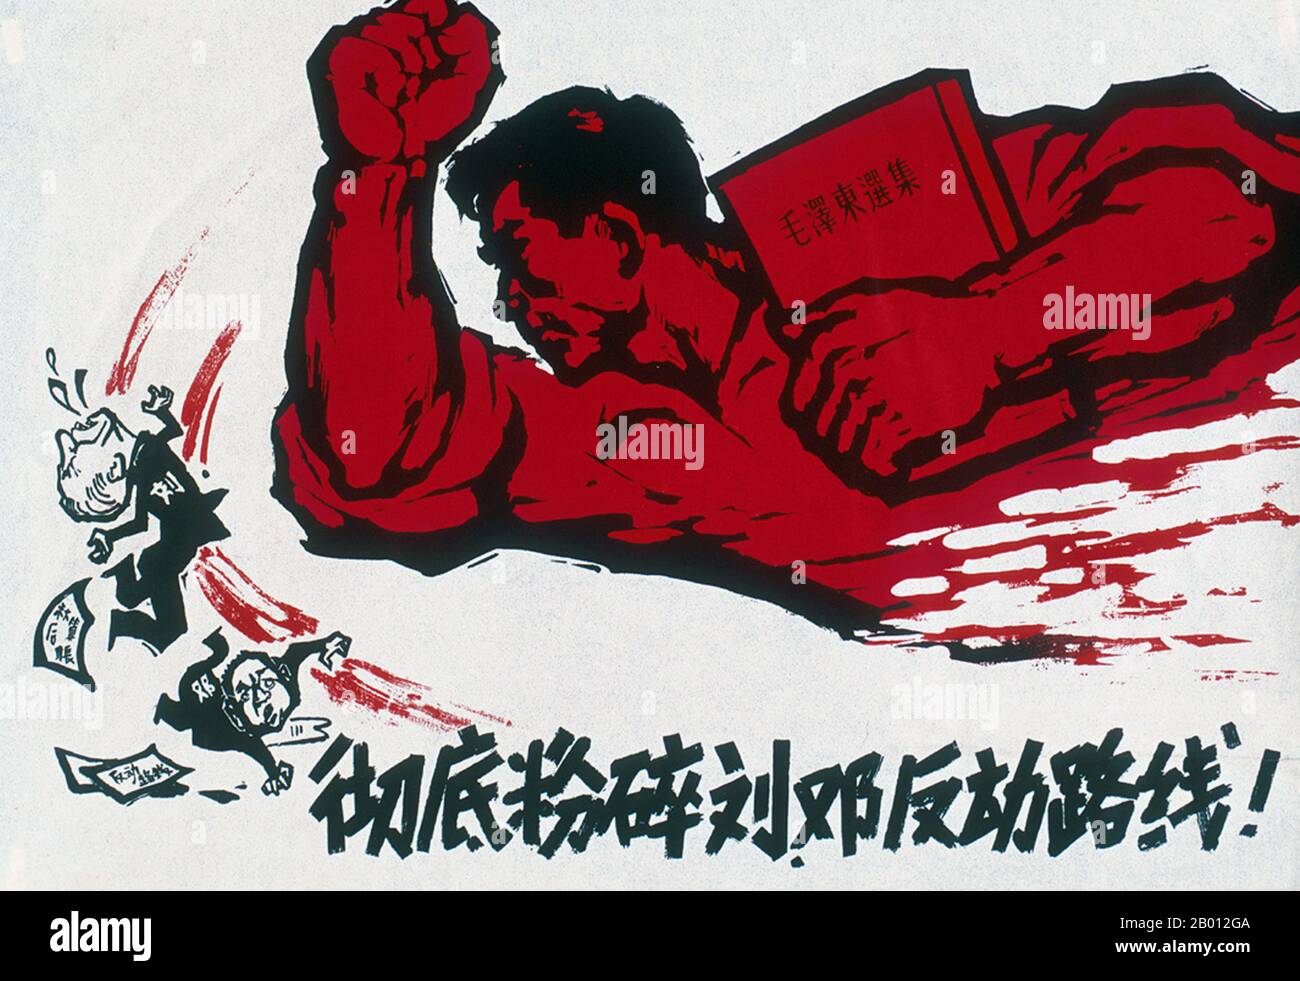 Chine: 'Smash complètement la ligne de la contre-révolution Liu-Deng'. Art de l'affiche de la Révolution culturelle, 1967. Liu Shaoqi (Liu Shao-ch'i, 24 novembre 1898 – 12 novembre 1969) était un révolutionnaire, un homme d'État et un théoricien. De 1959 à 1968, il a été président de la République populaire de Chine, chef d'État chinois, au cours de laquelle il a mis en œuvre des politiques de reconstruction économique en Chine. Deng Xiaoping (Teng Hsiao-p'ing; 22 août 1904 – 19 février 1997) était un homme politique, un homme d'État, un théoricien et un diplomate. En tant que dirigeant du Parti communiste, Deng était un réformateur qui a conduit la Chine vers une économie de marché. Banque D'Images